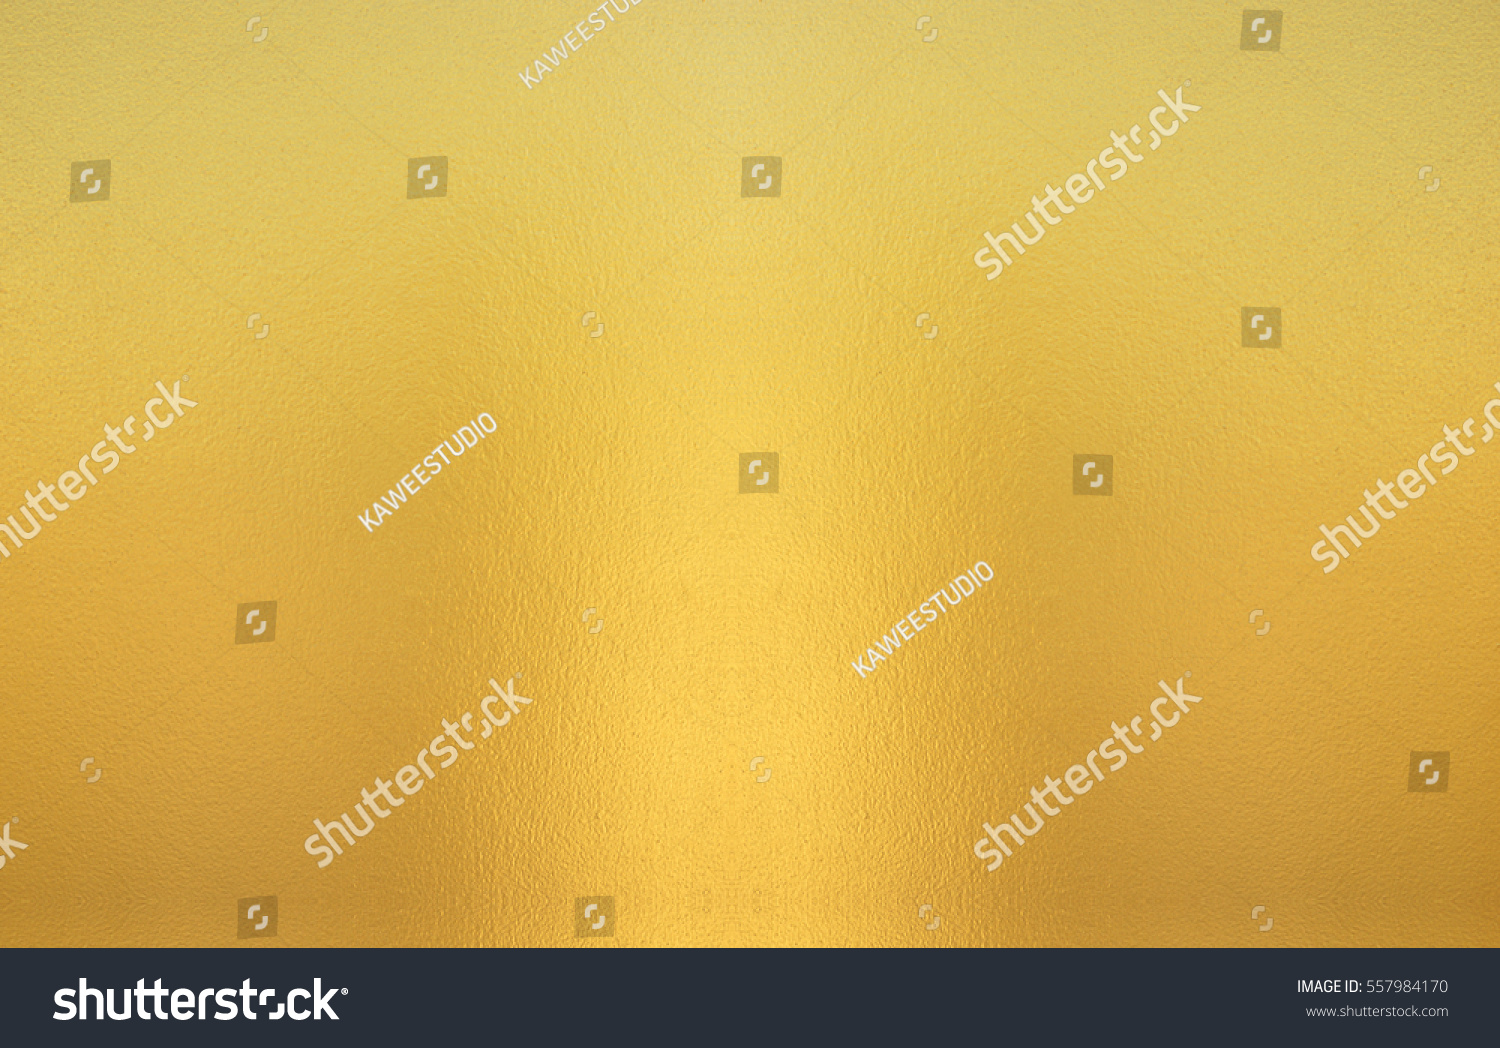 Luxury golden background. gold texture.  #557984170